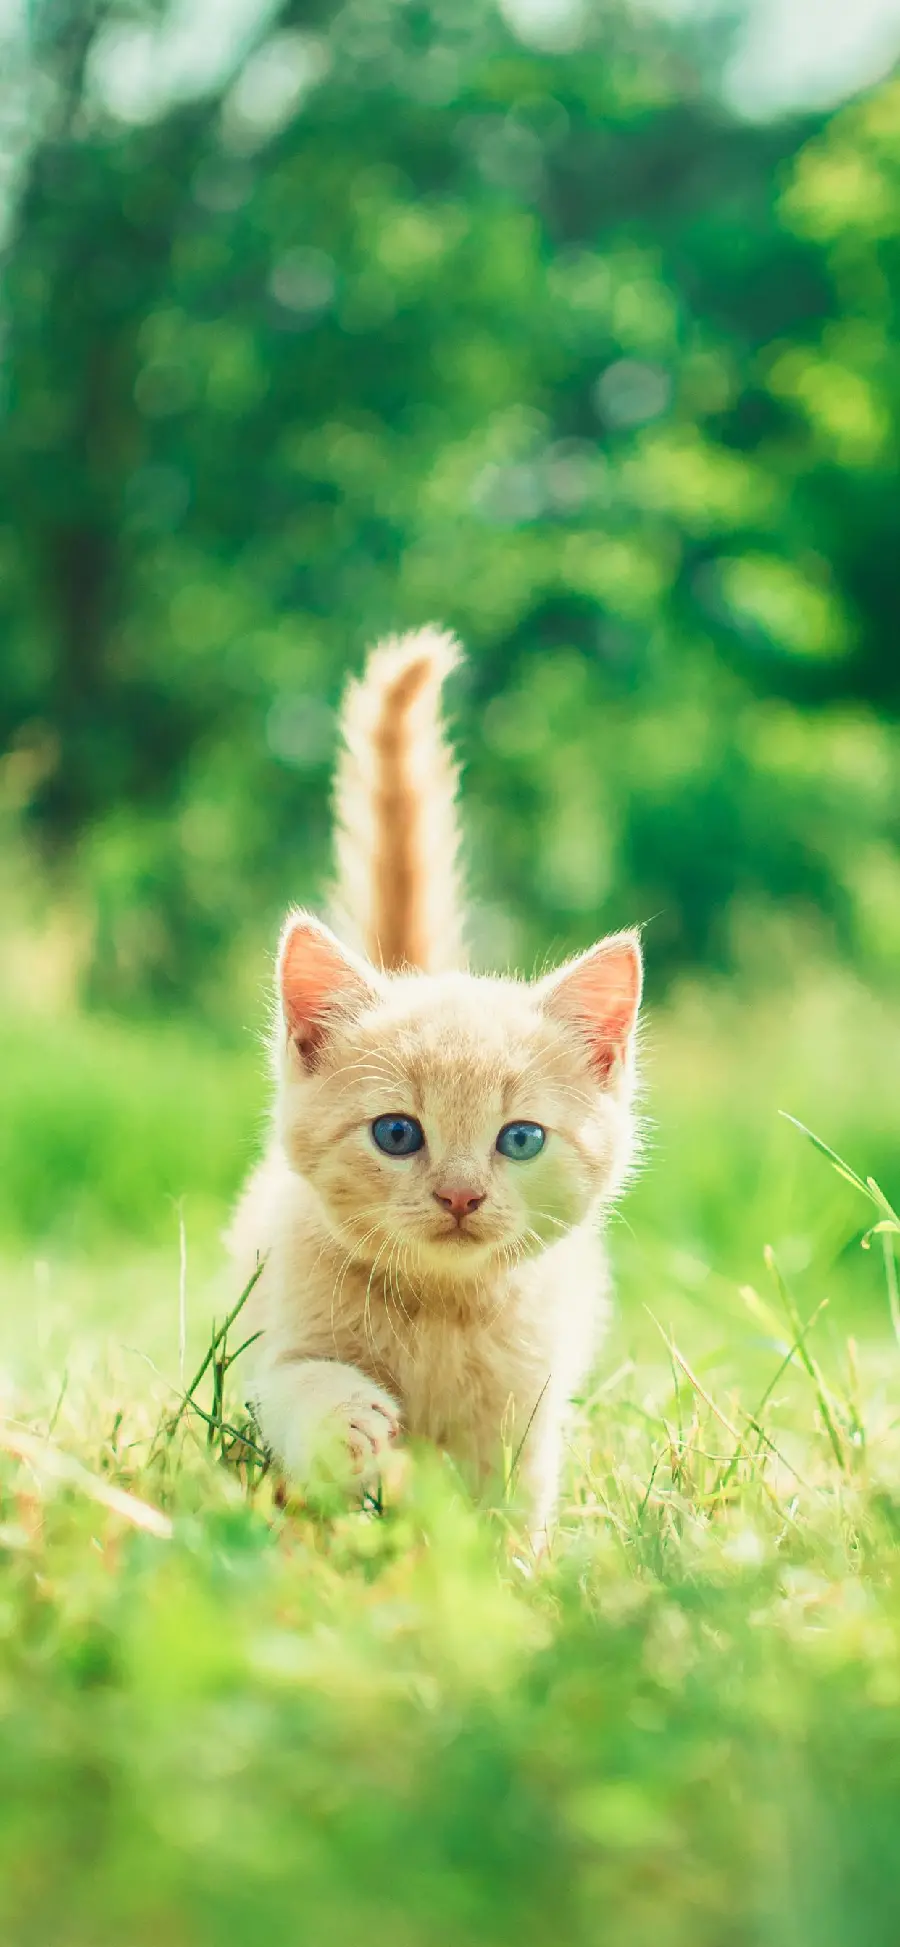 والپیپر بچه گربه قشنگ با دم زییا در یک نمای هنری با کیفیت